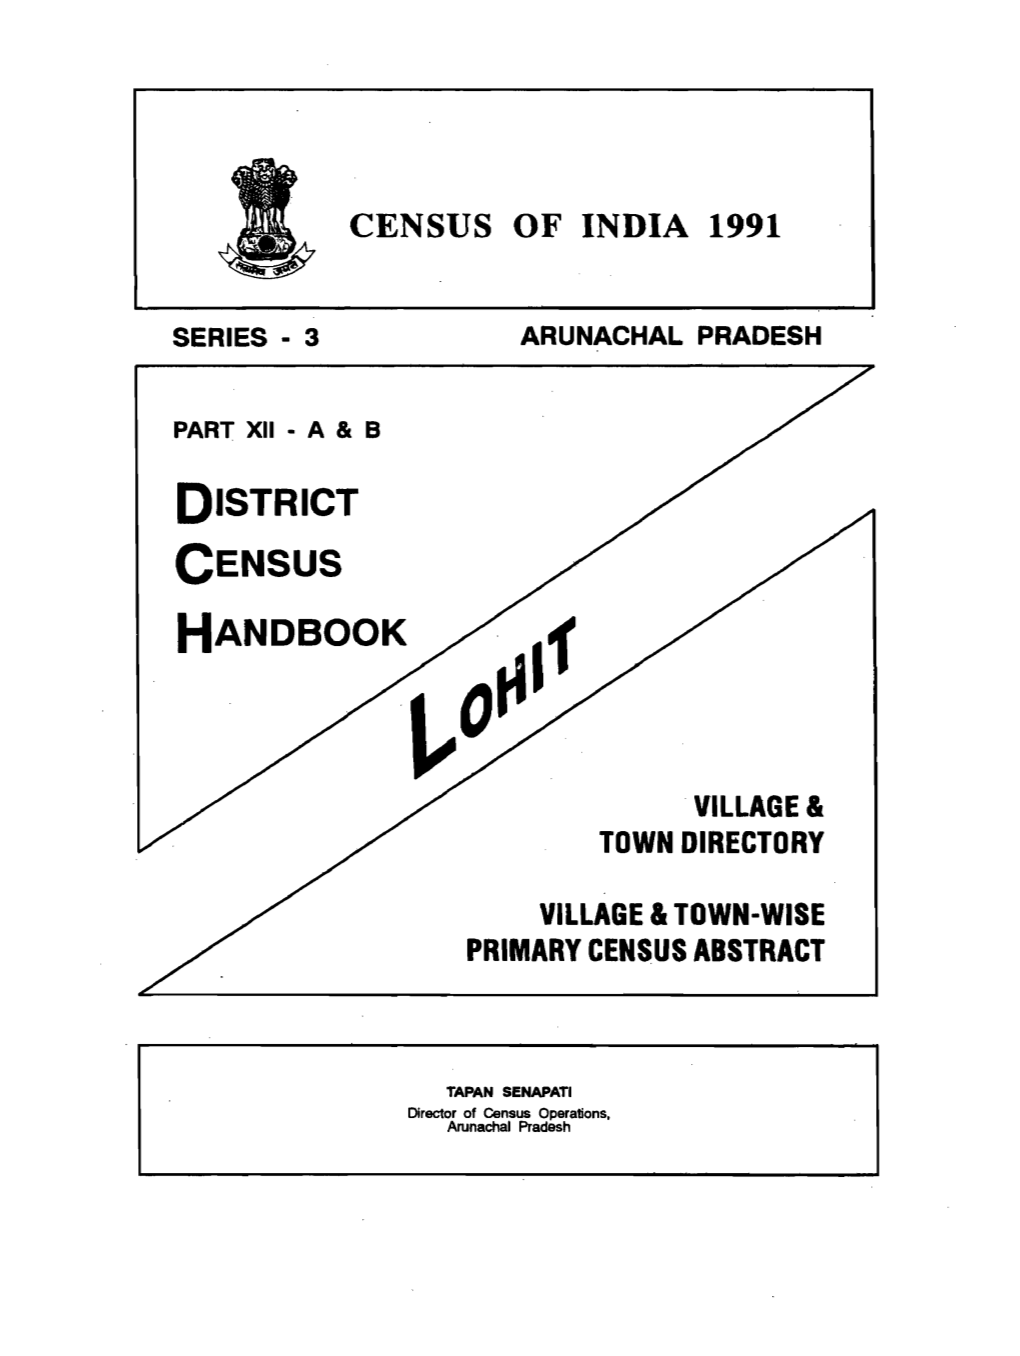 District Census Handbook, Lohit, Part XII a & B, Series-3, Arunachal